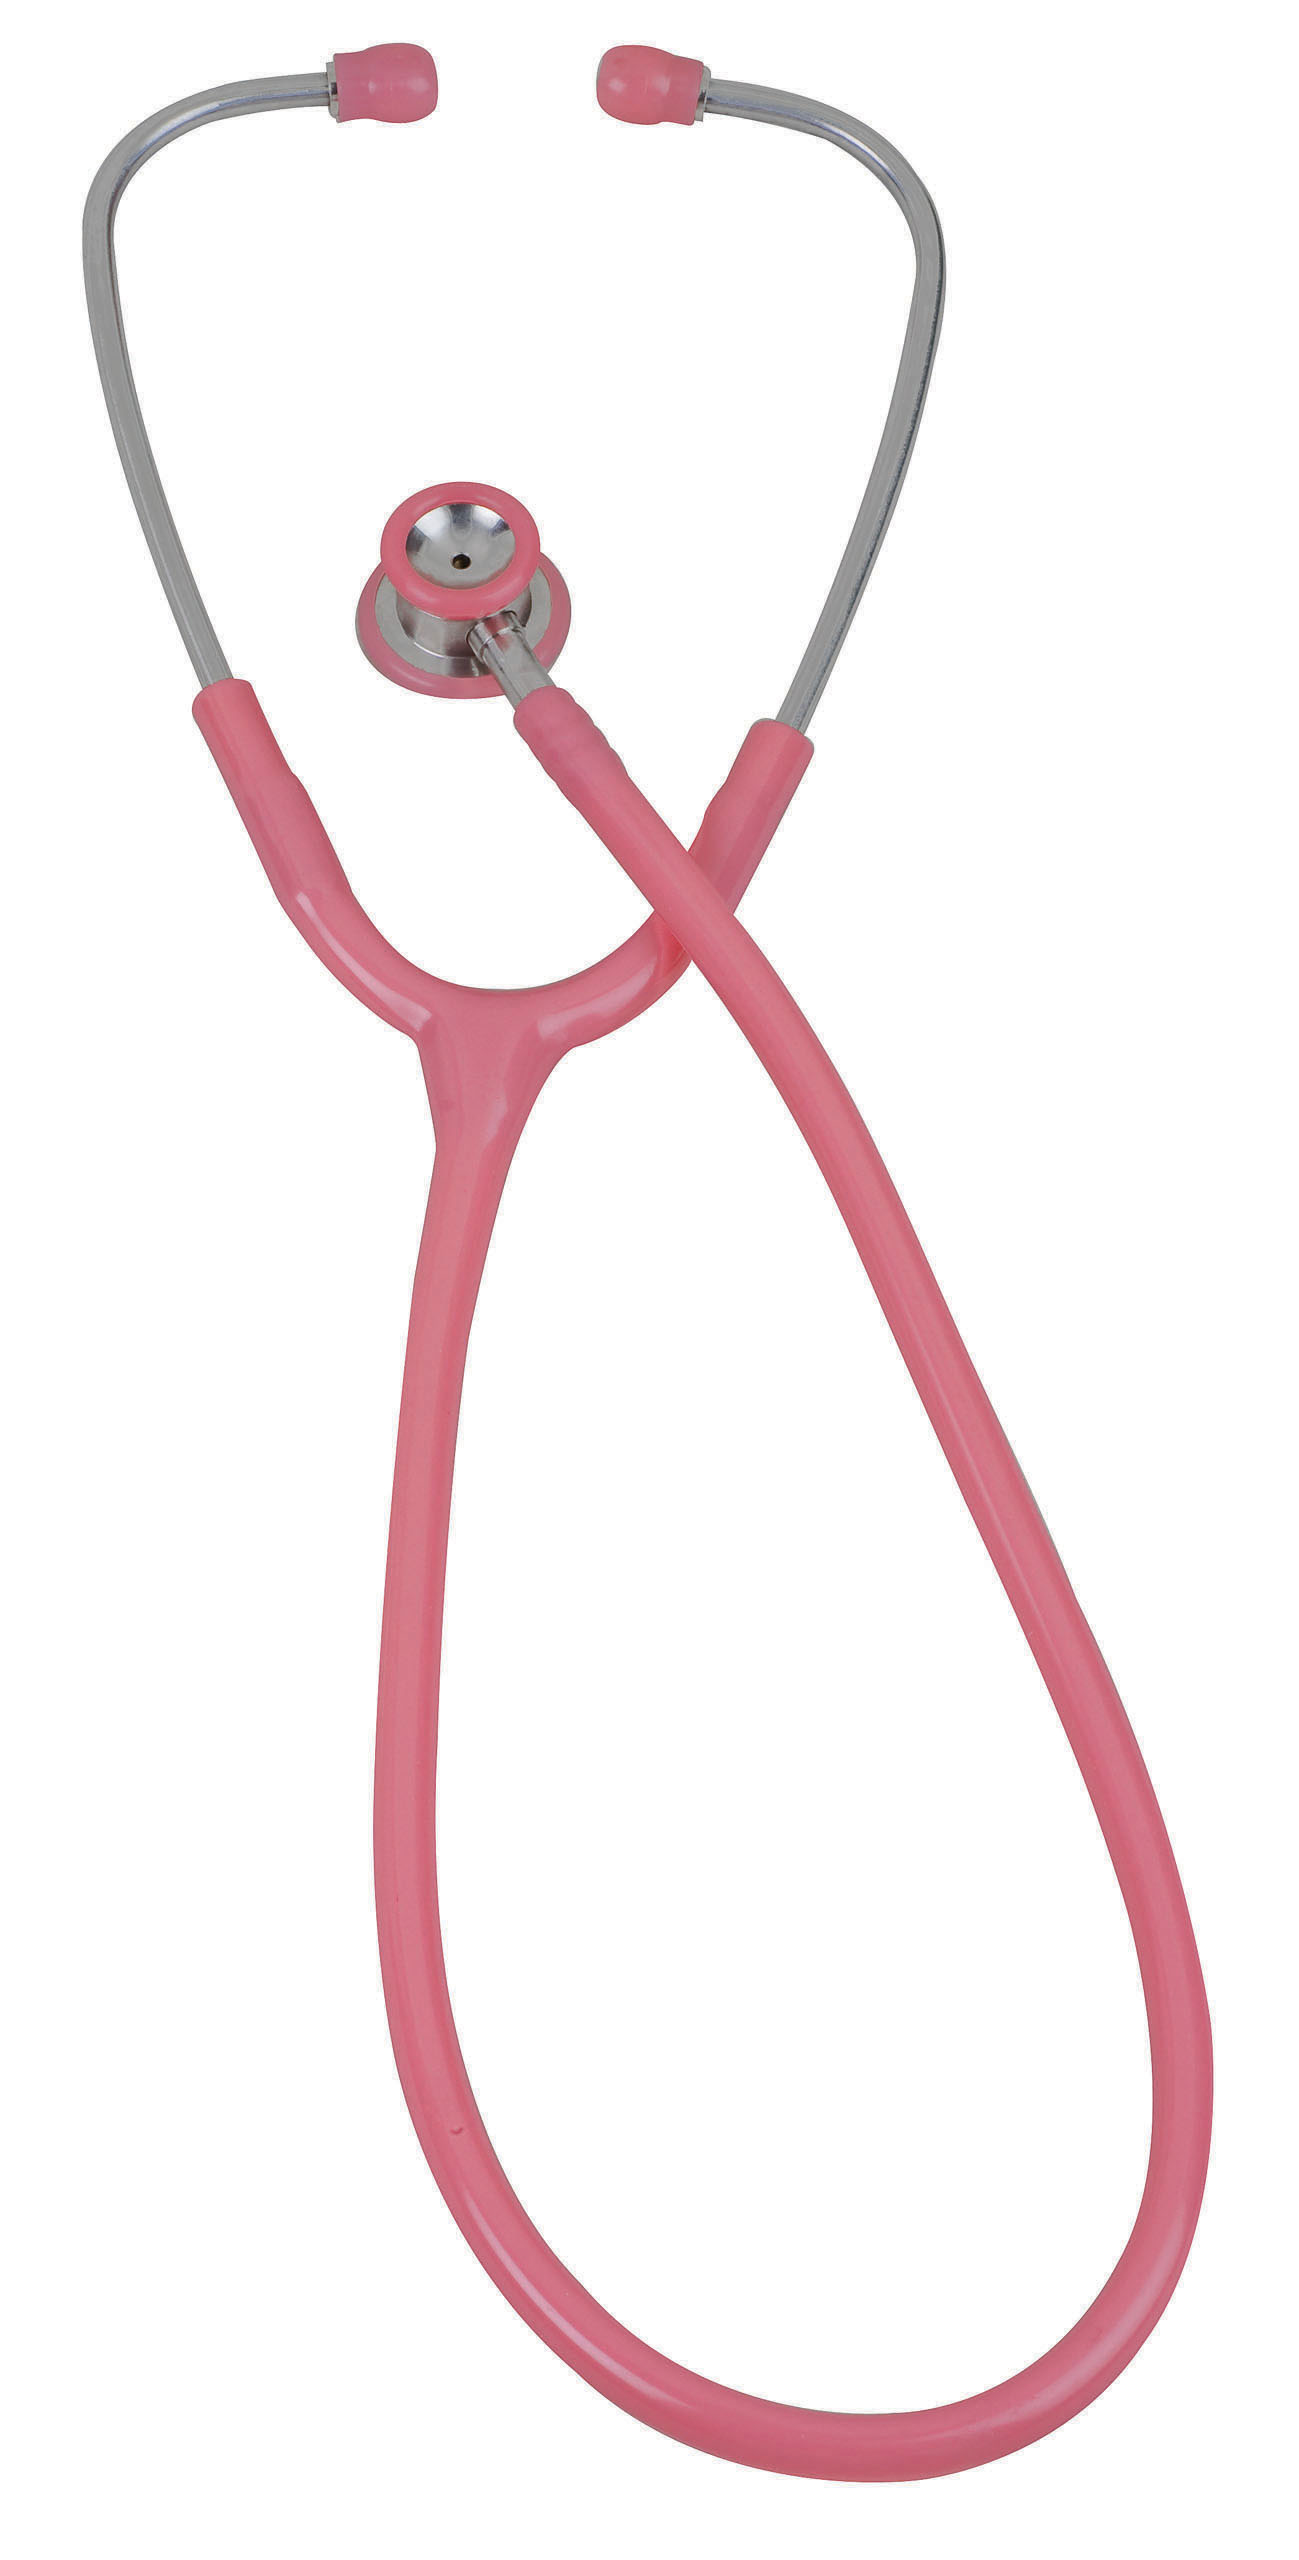 pinnacle-series-stainless-steel-infant-stethoscope-pink-05-10710-veridian-2.jpg